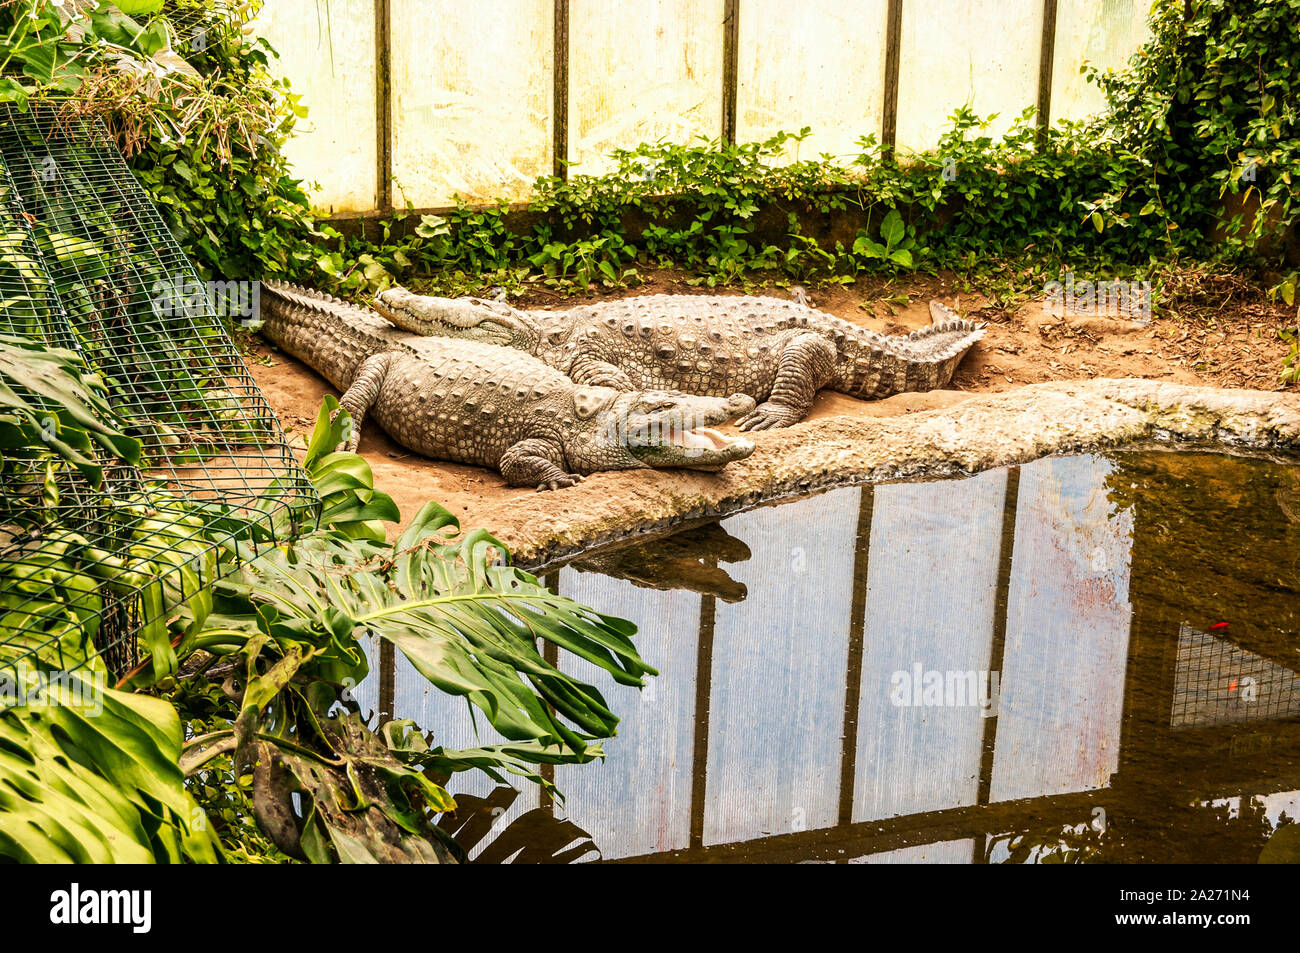 Due grandi di colore marrone chiaro coccodrilli, uno schiusi, giacciono su un banco di sabbia di una piscina circondata da una vegetazione di crogiolarsi nella luce del sole attraverso un muro opaco Foto Stock